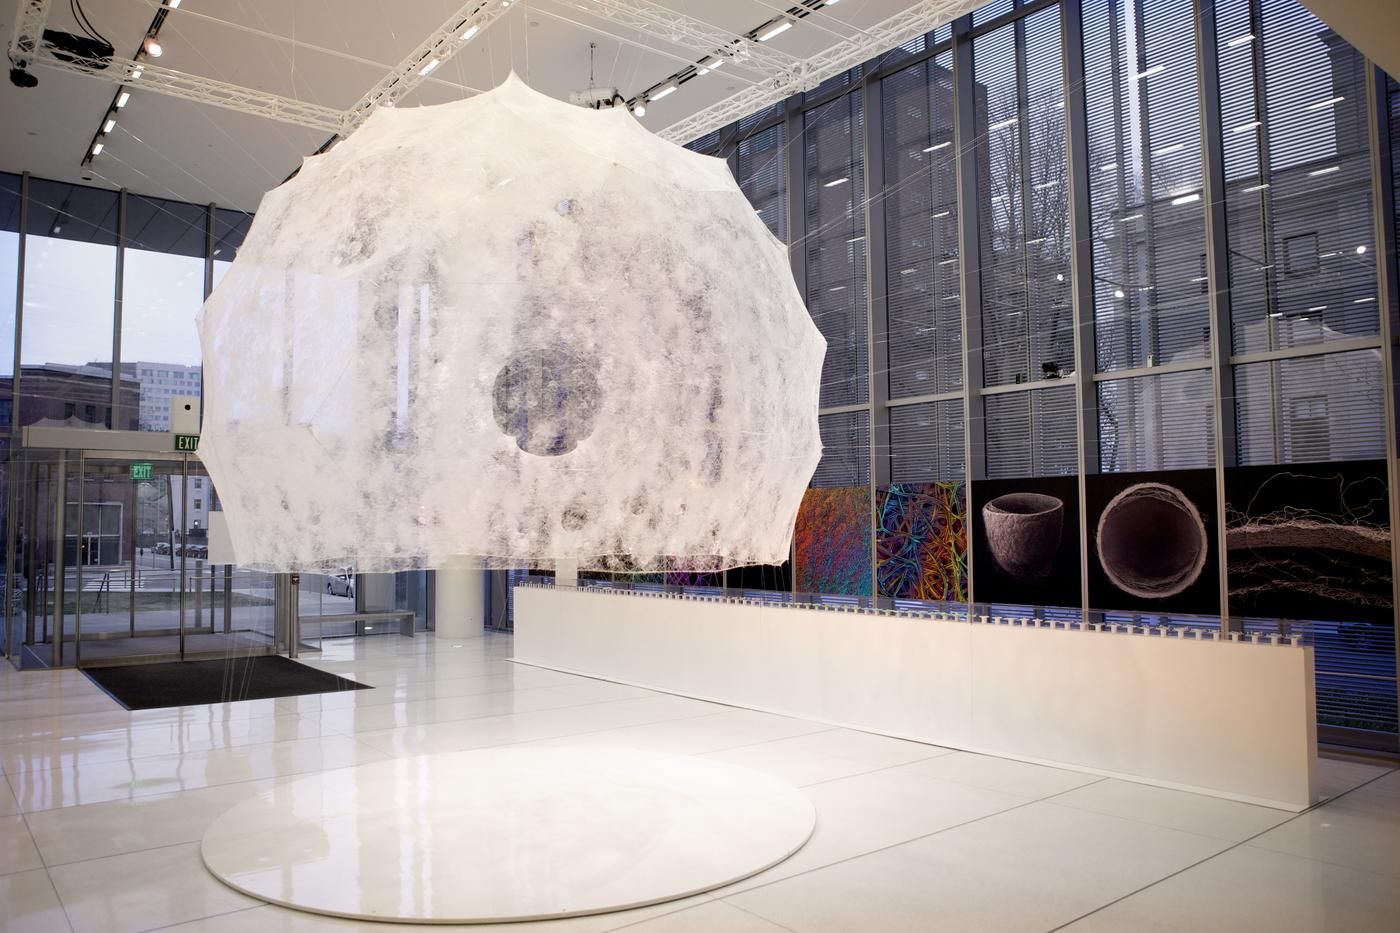 Silk Pavilion by Mediated Matter Lab, MIT